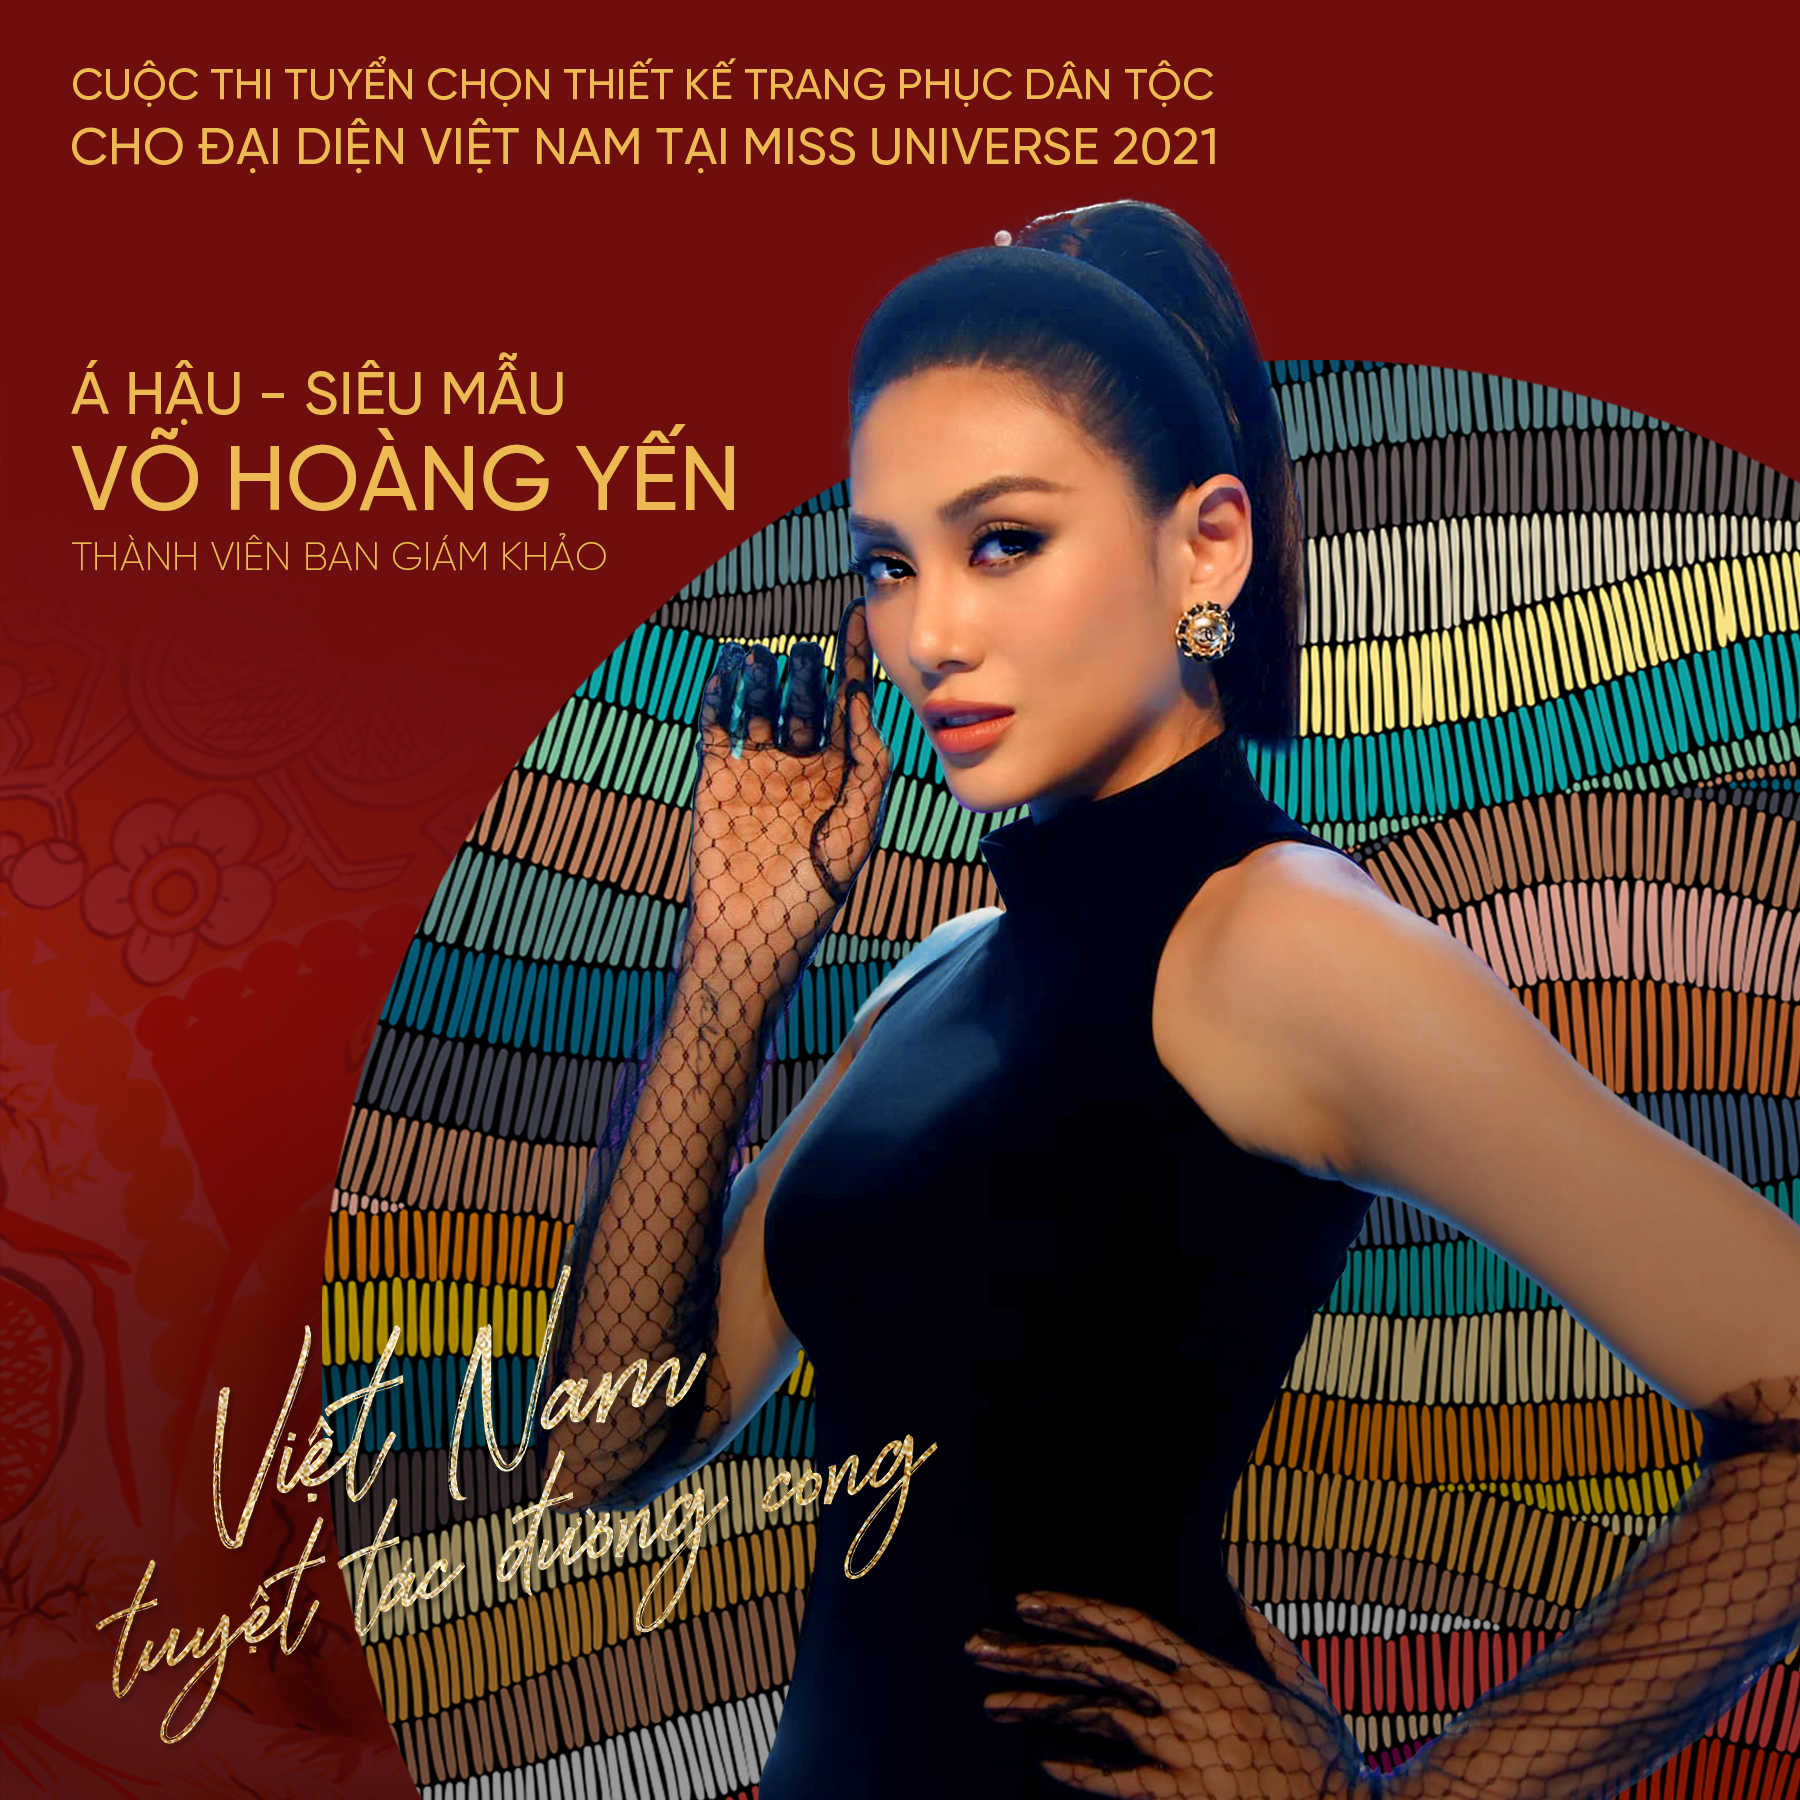 Siêu mẫu Võ Hoàng Yến, Hoa hậu H'Hen Niê giúp Khánh Vân chọn trang phục dân tộc Miss Universe 2020 - Ảnh 2.